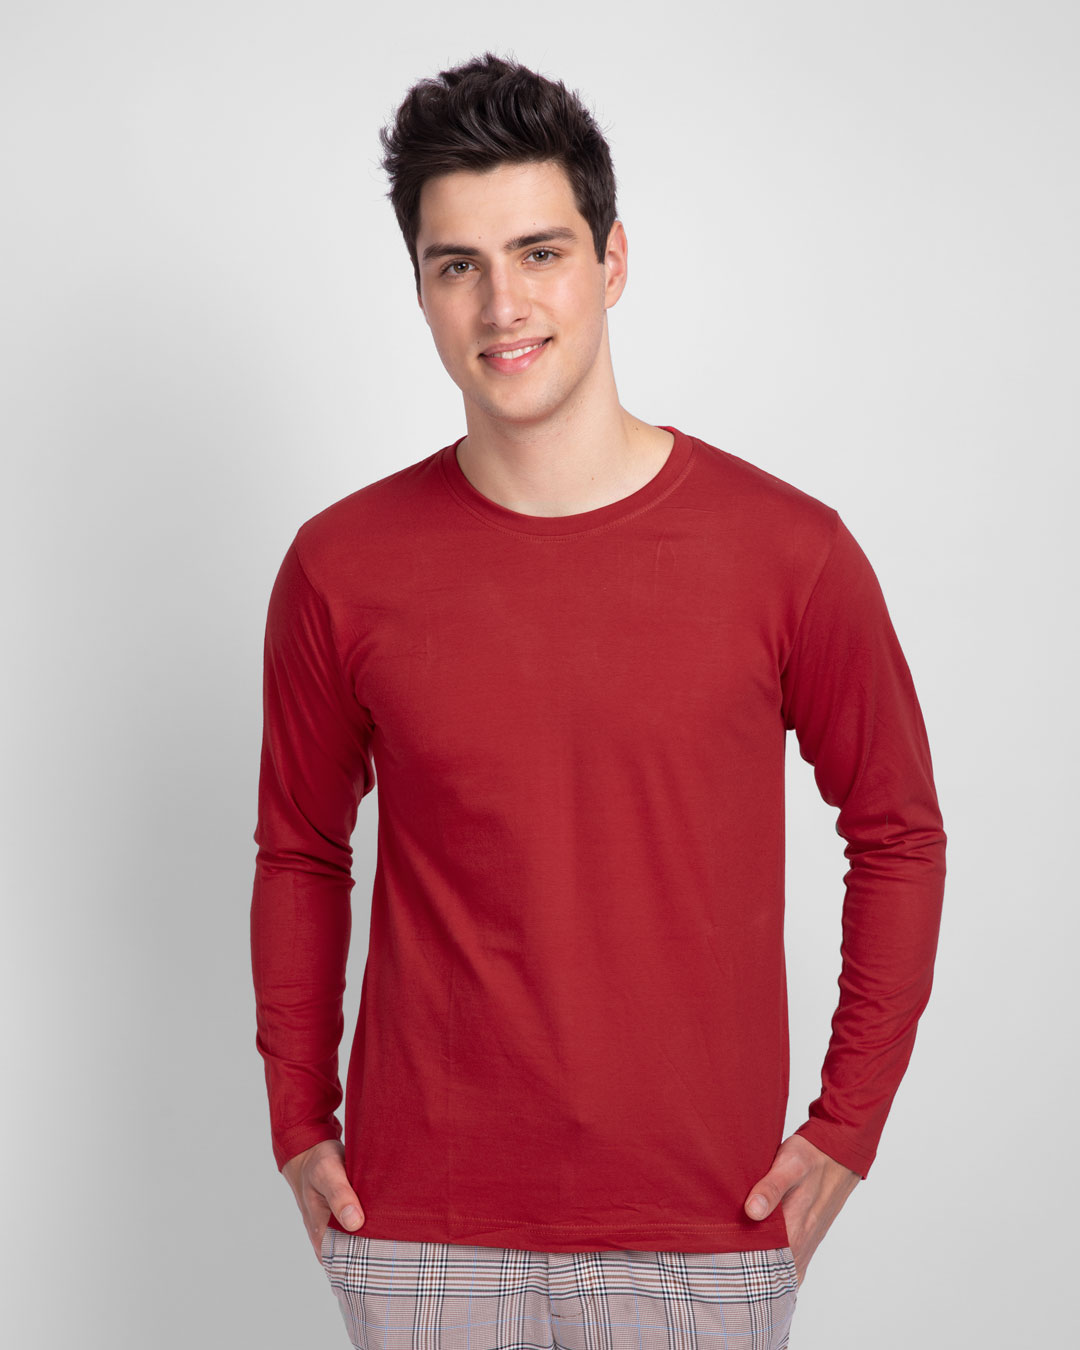 Buy Bold Red Plain Full Sleeve T-Shirt For Men Online India @ Bewakoof.com